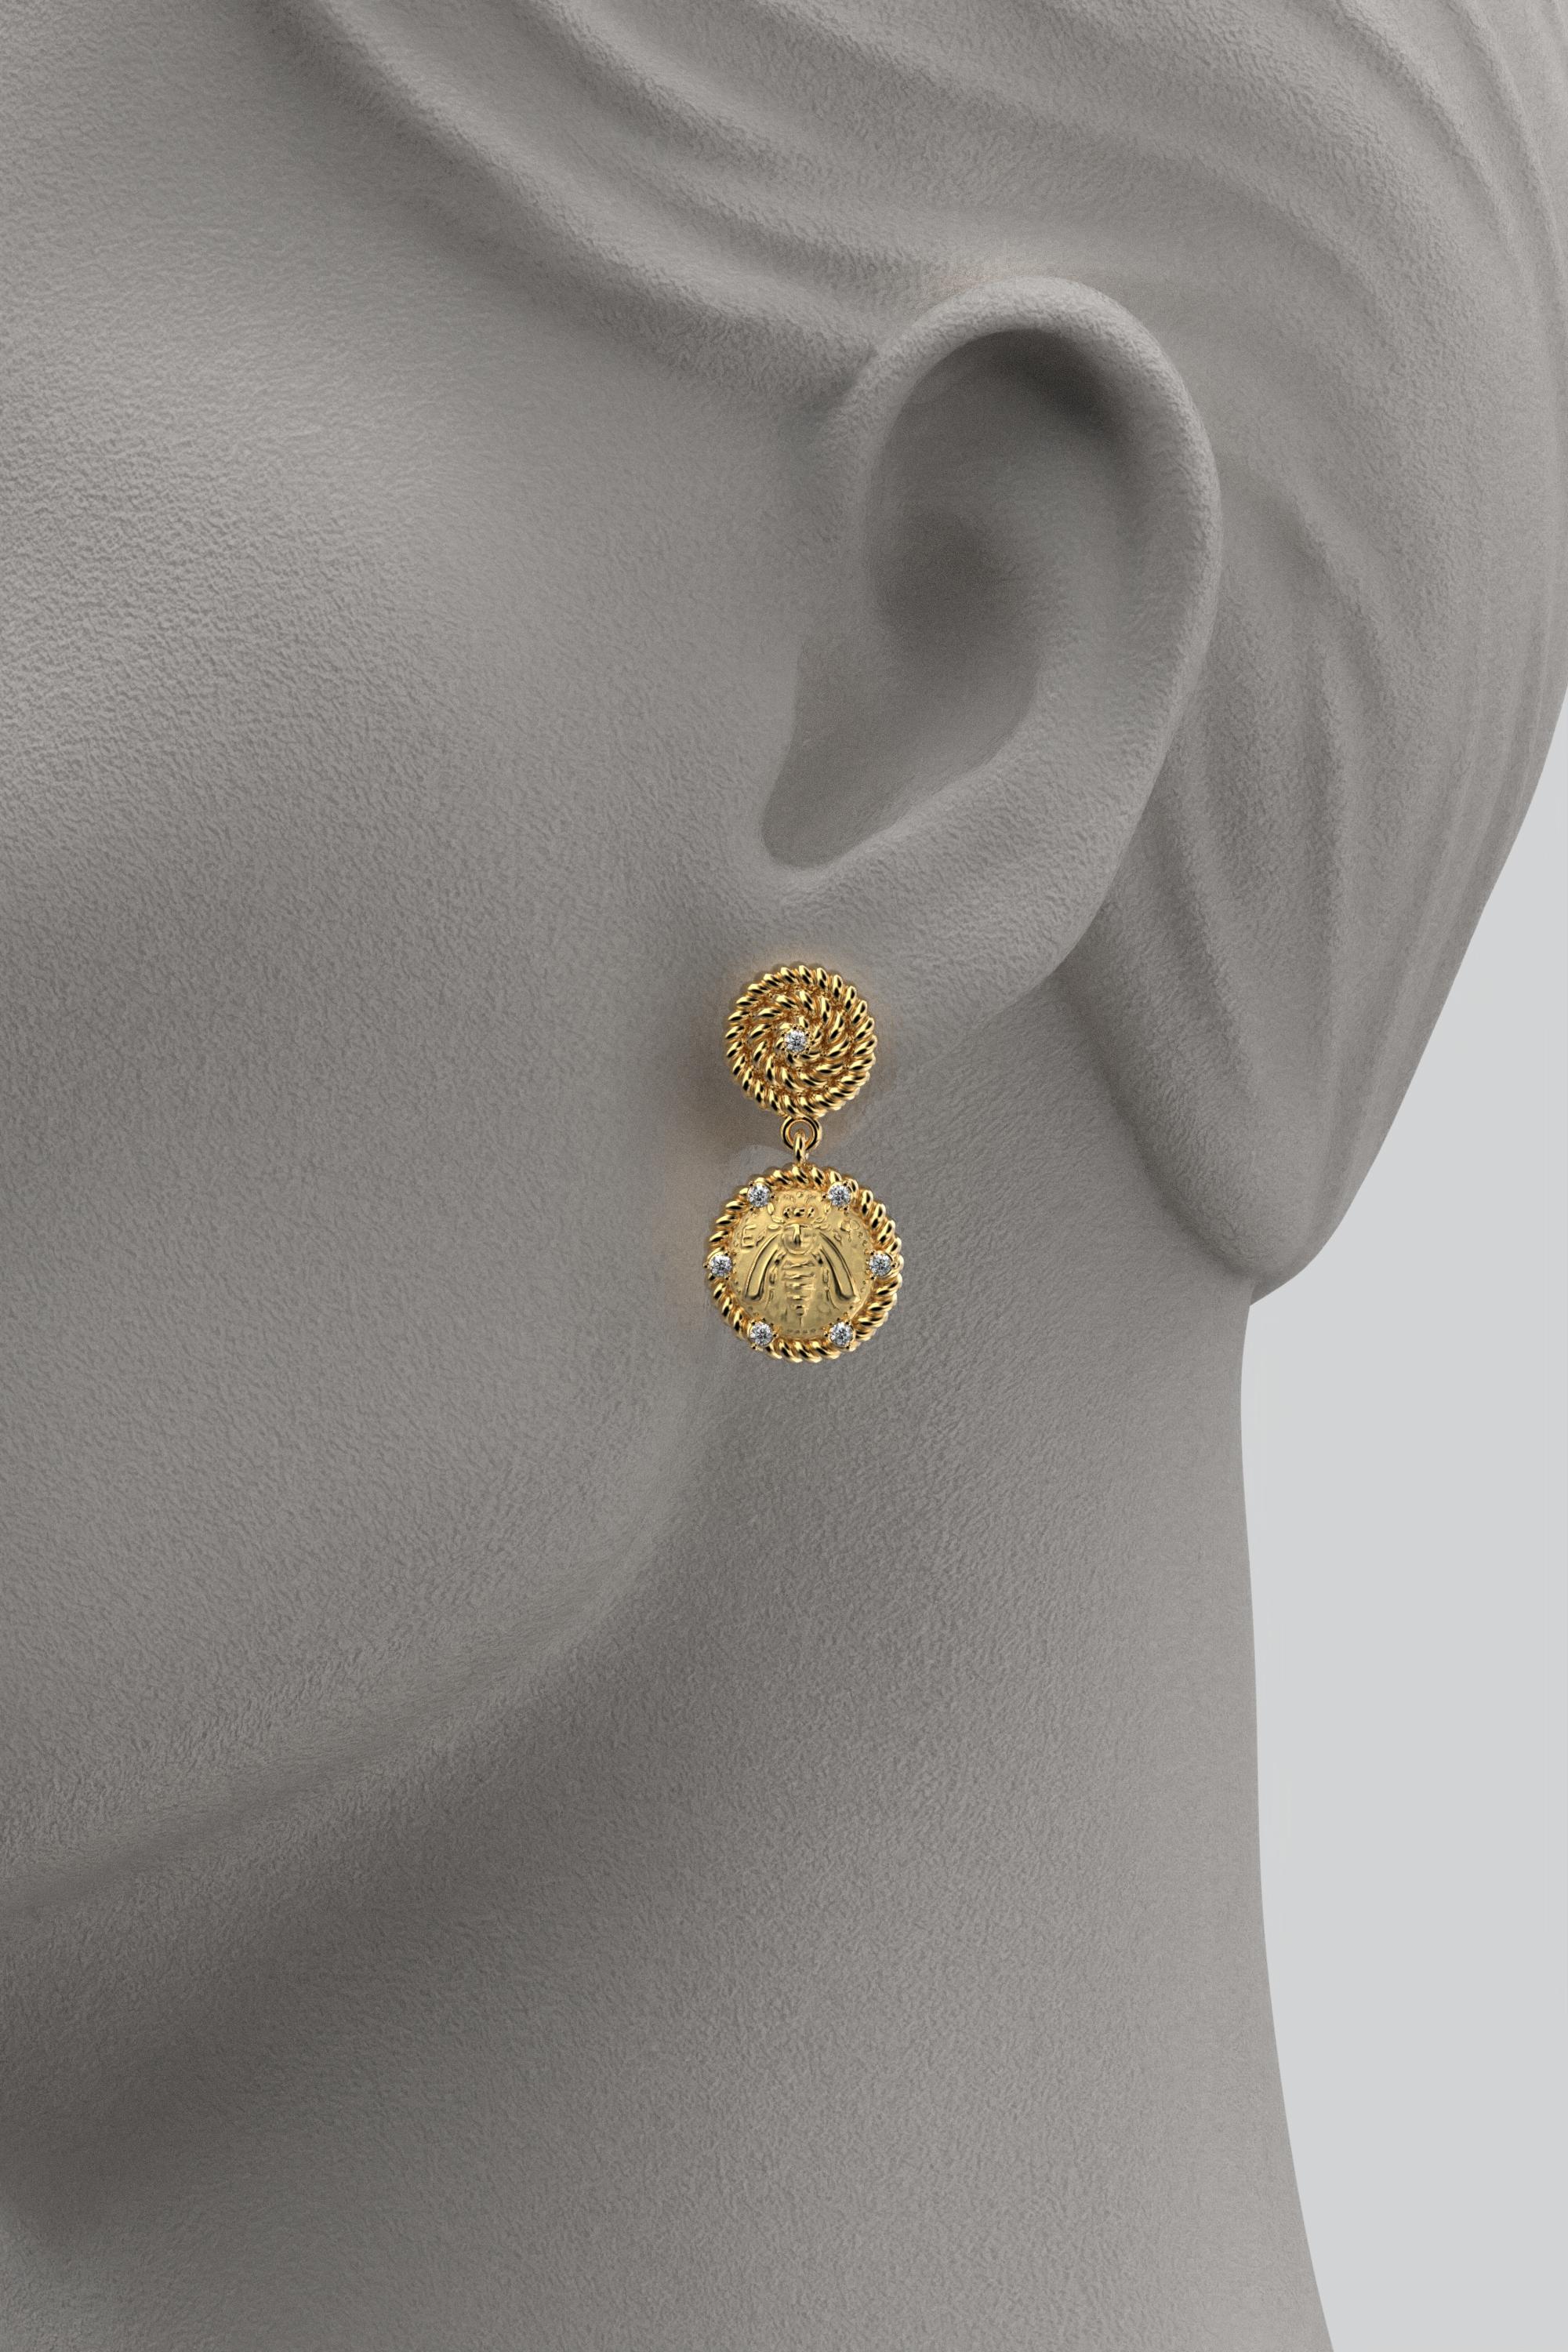 Brilliant Cut Italian Jewelry  14k Gold Dangle Earrings With Diamonds  Bee Earrings  For Sale